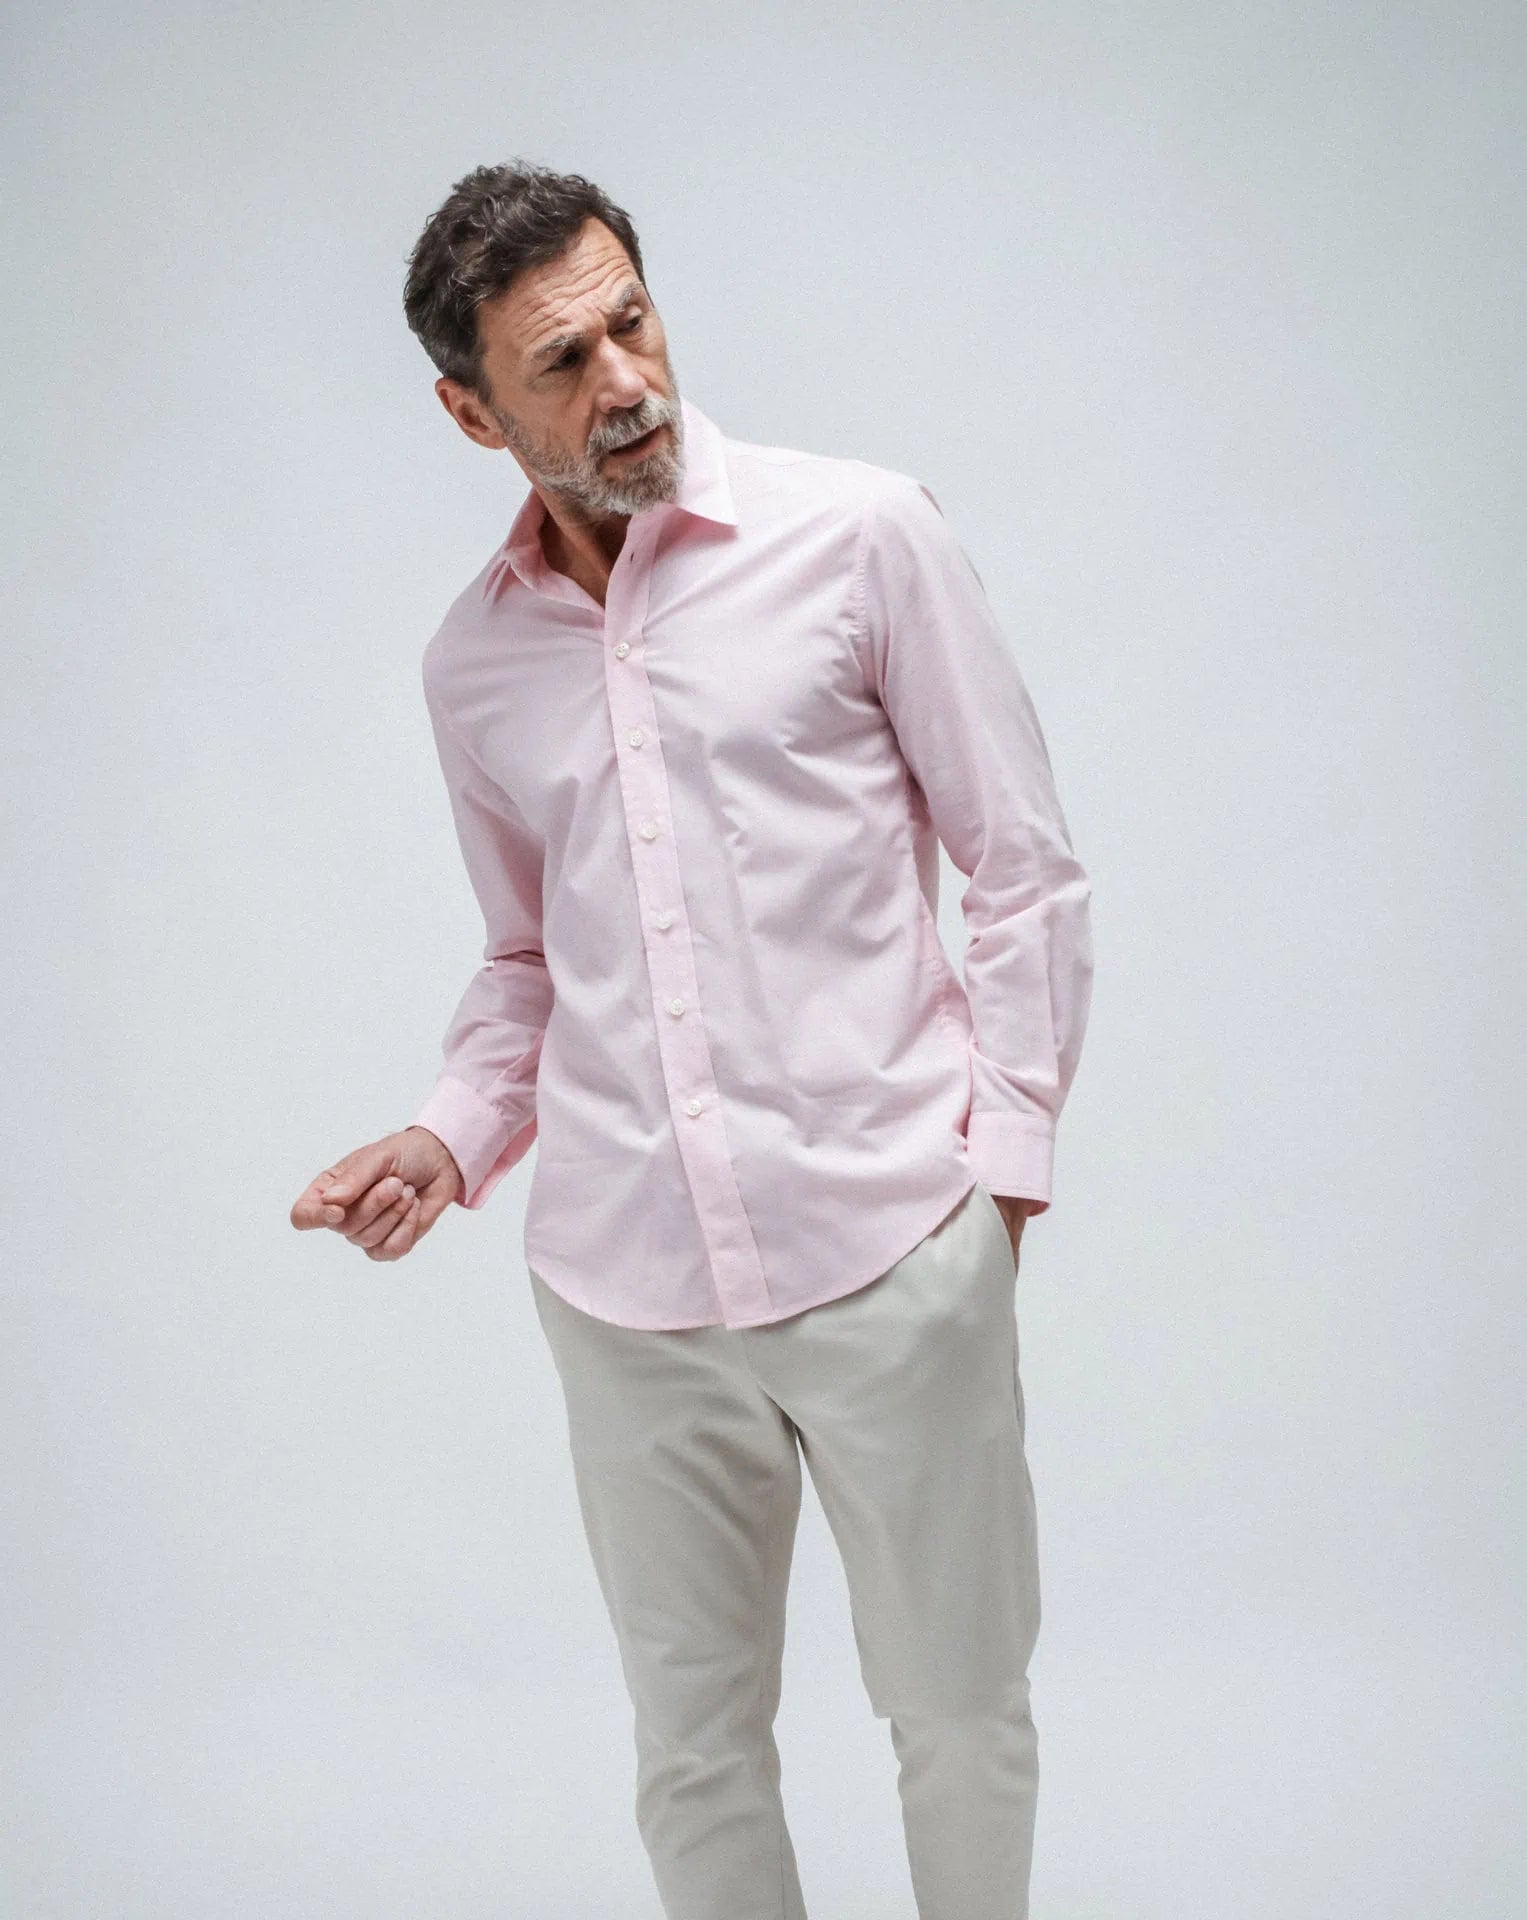 The Men's Pink shirt